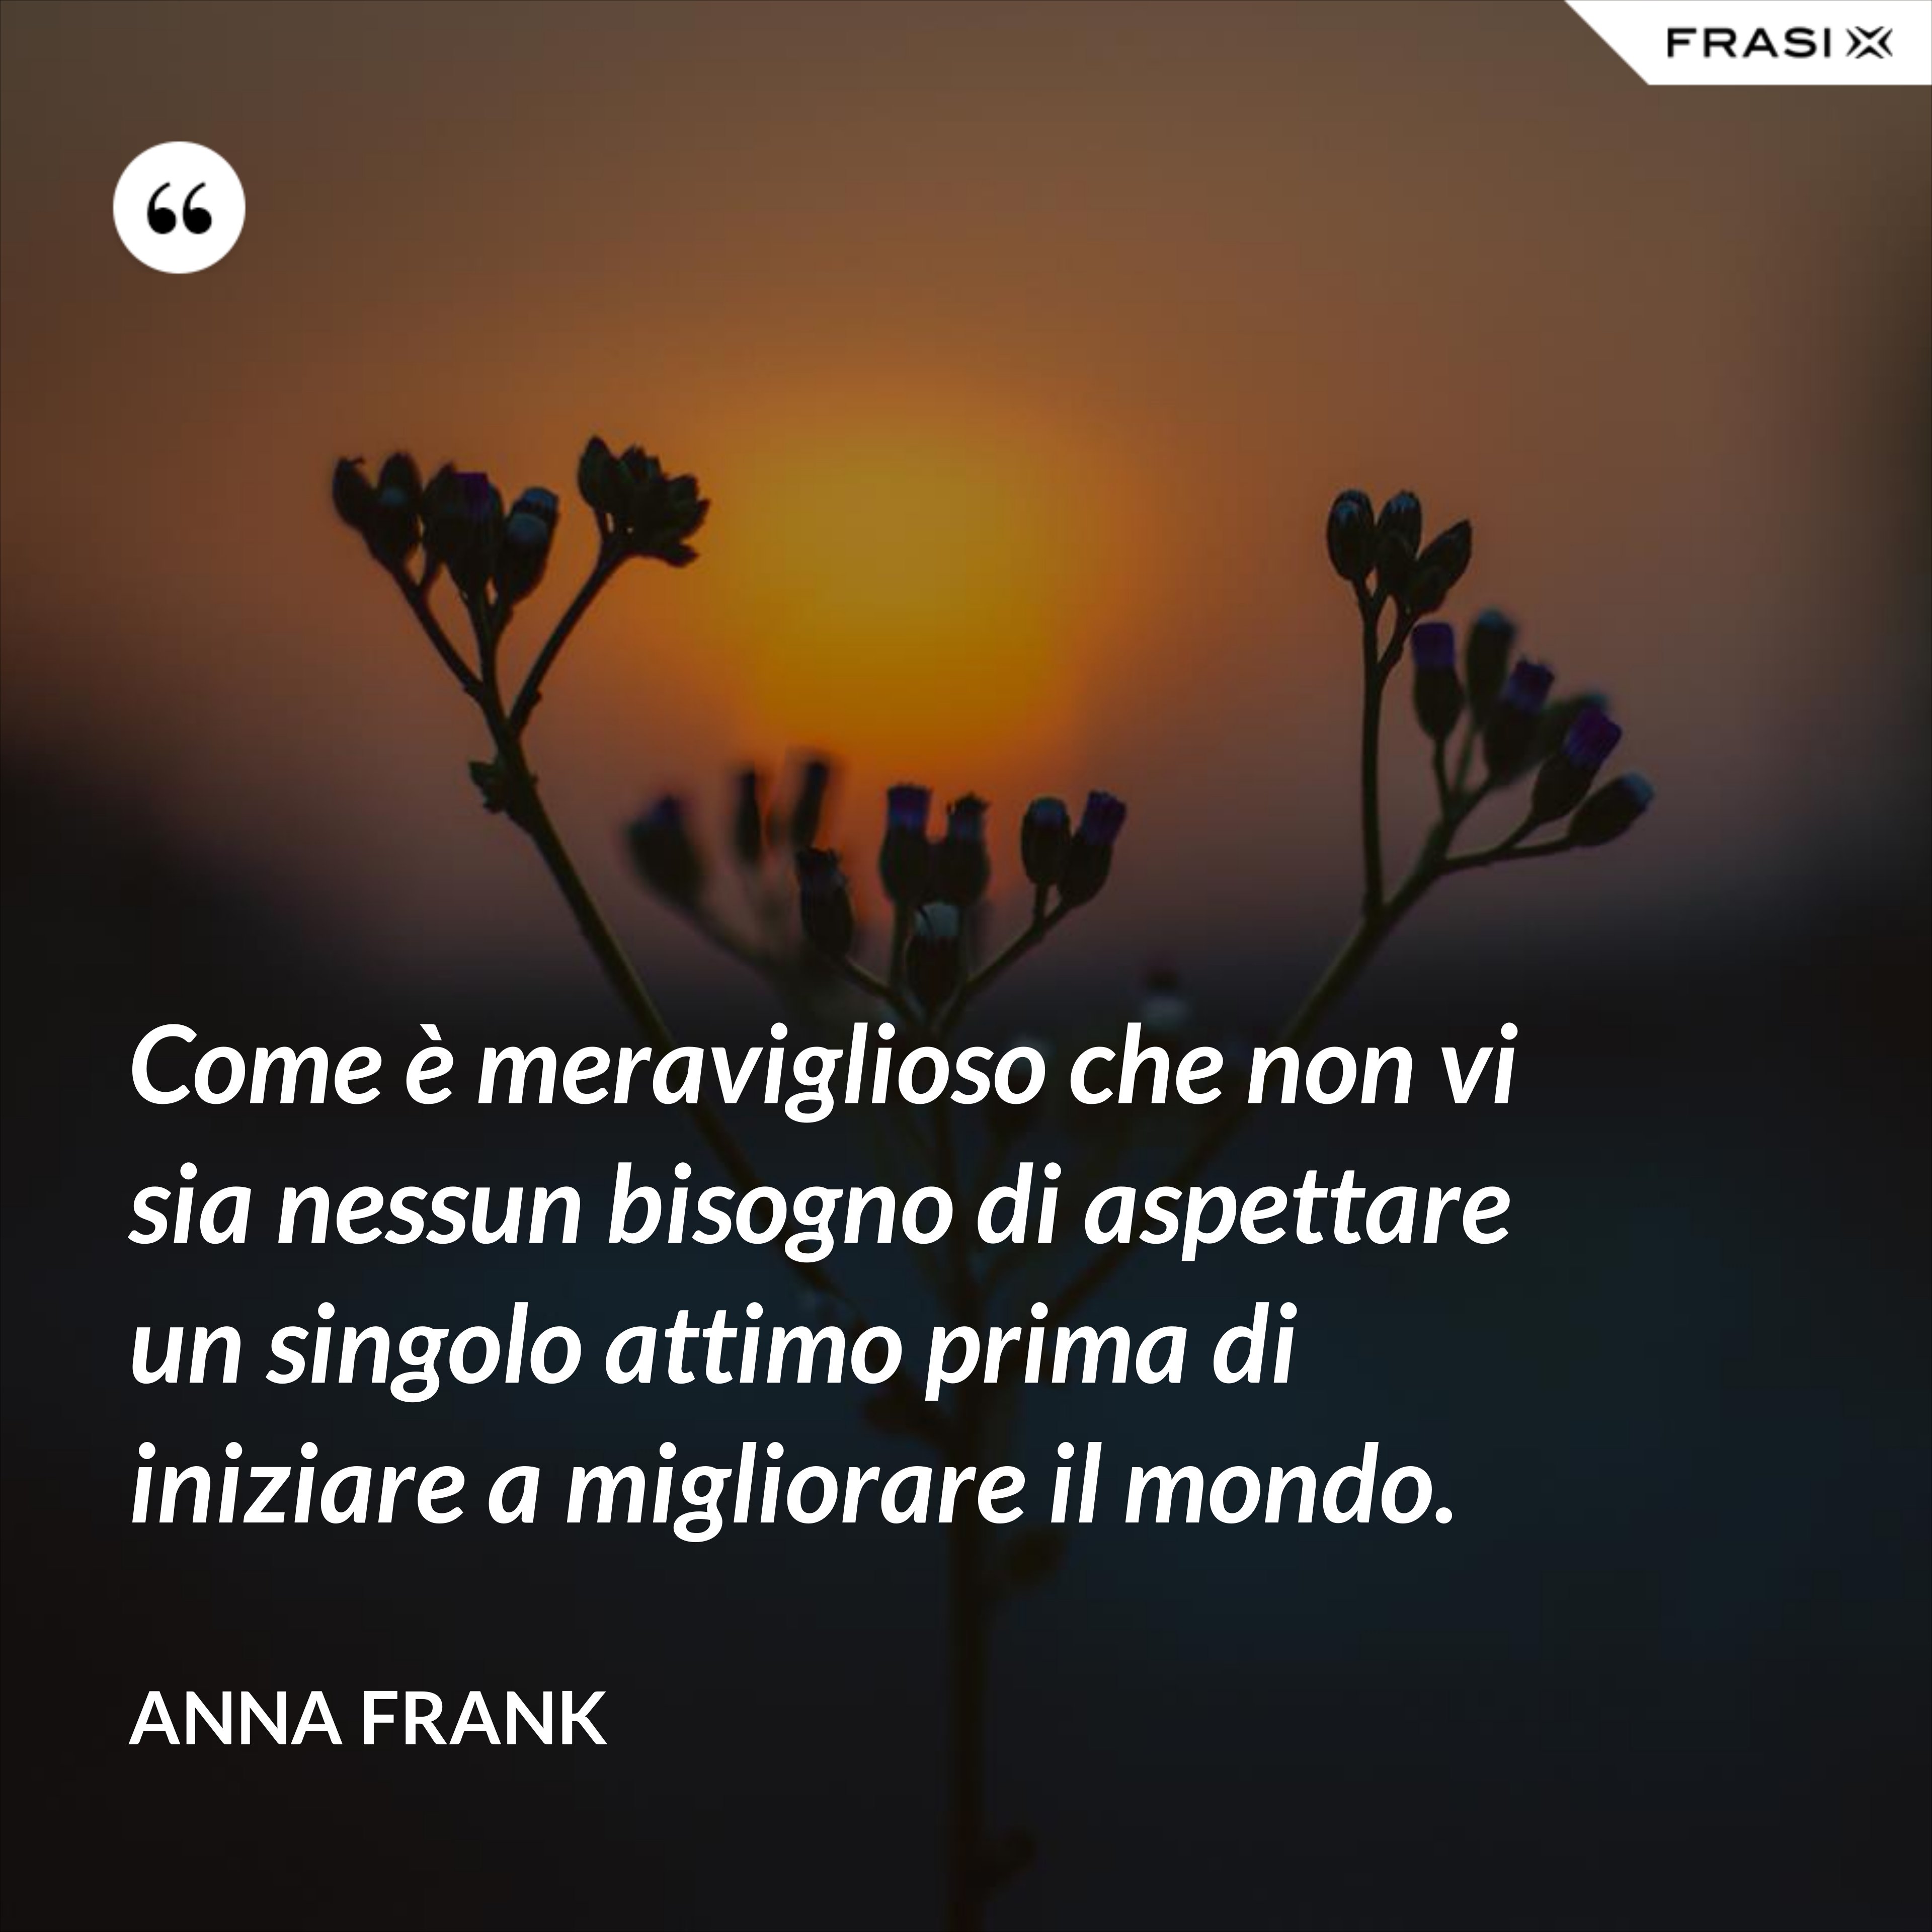 Come è meraviglioso che non vi sia nessun bisogno di aspettare un singolo attimo prima di iniziare a migliorare il mondo. - Anna Frank